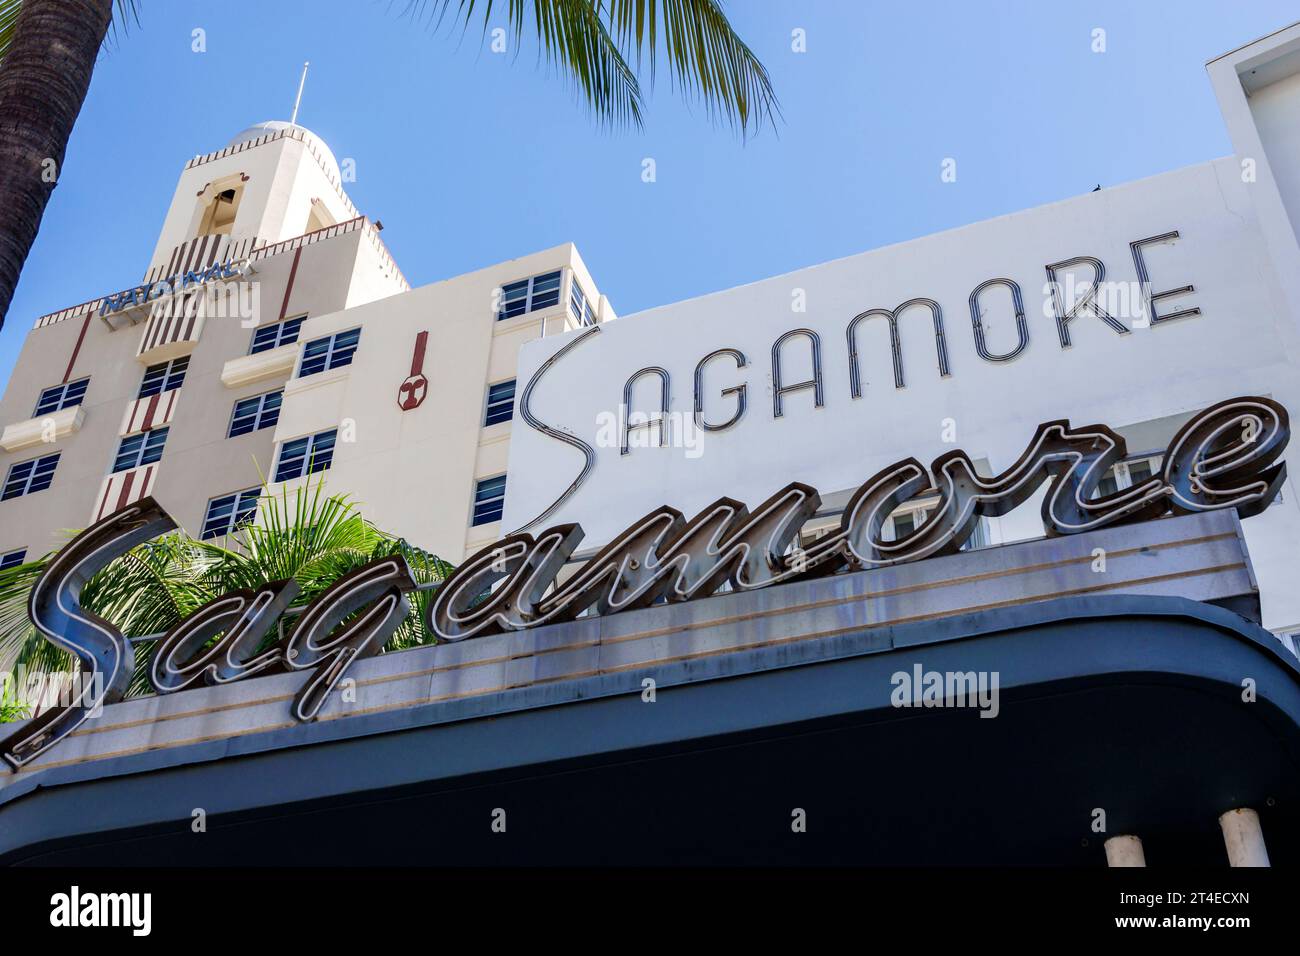 Miami Beach Floride, extérieur, entrée principale de l'hôtel, Collins Avenue, enseigne de l'hôtel Sagamore, National Hotel, un centre de villégiature Oceanfront réservé aux adultes, A. Banque D'Images